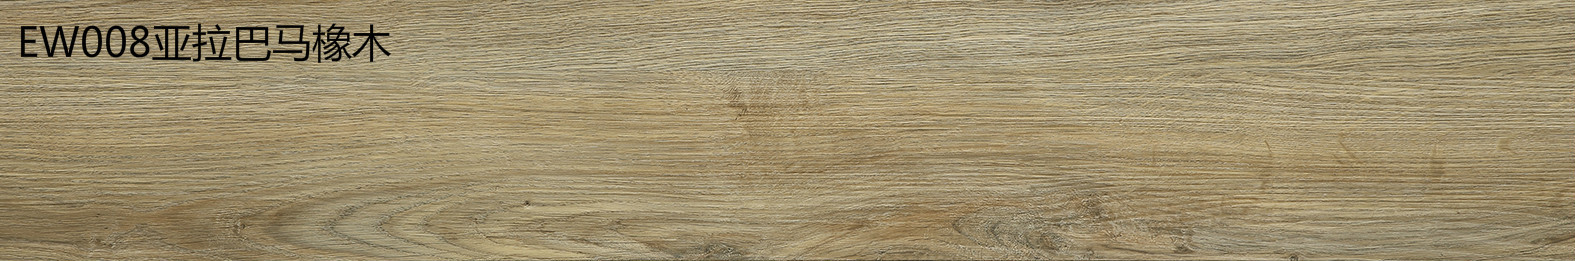 金鼠PVC地板木纹EW008